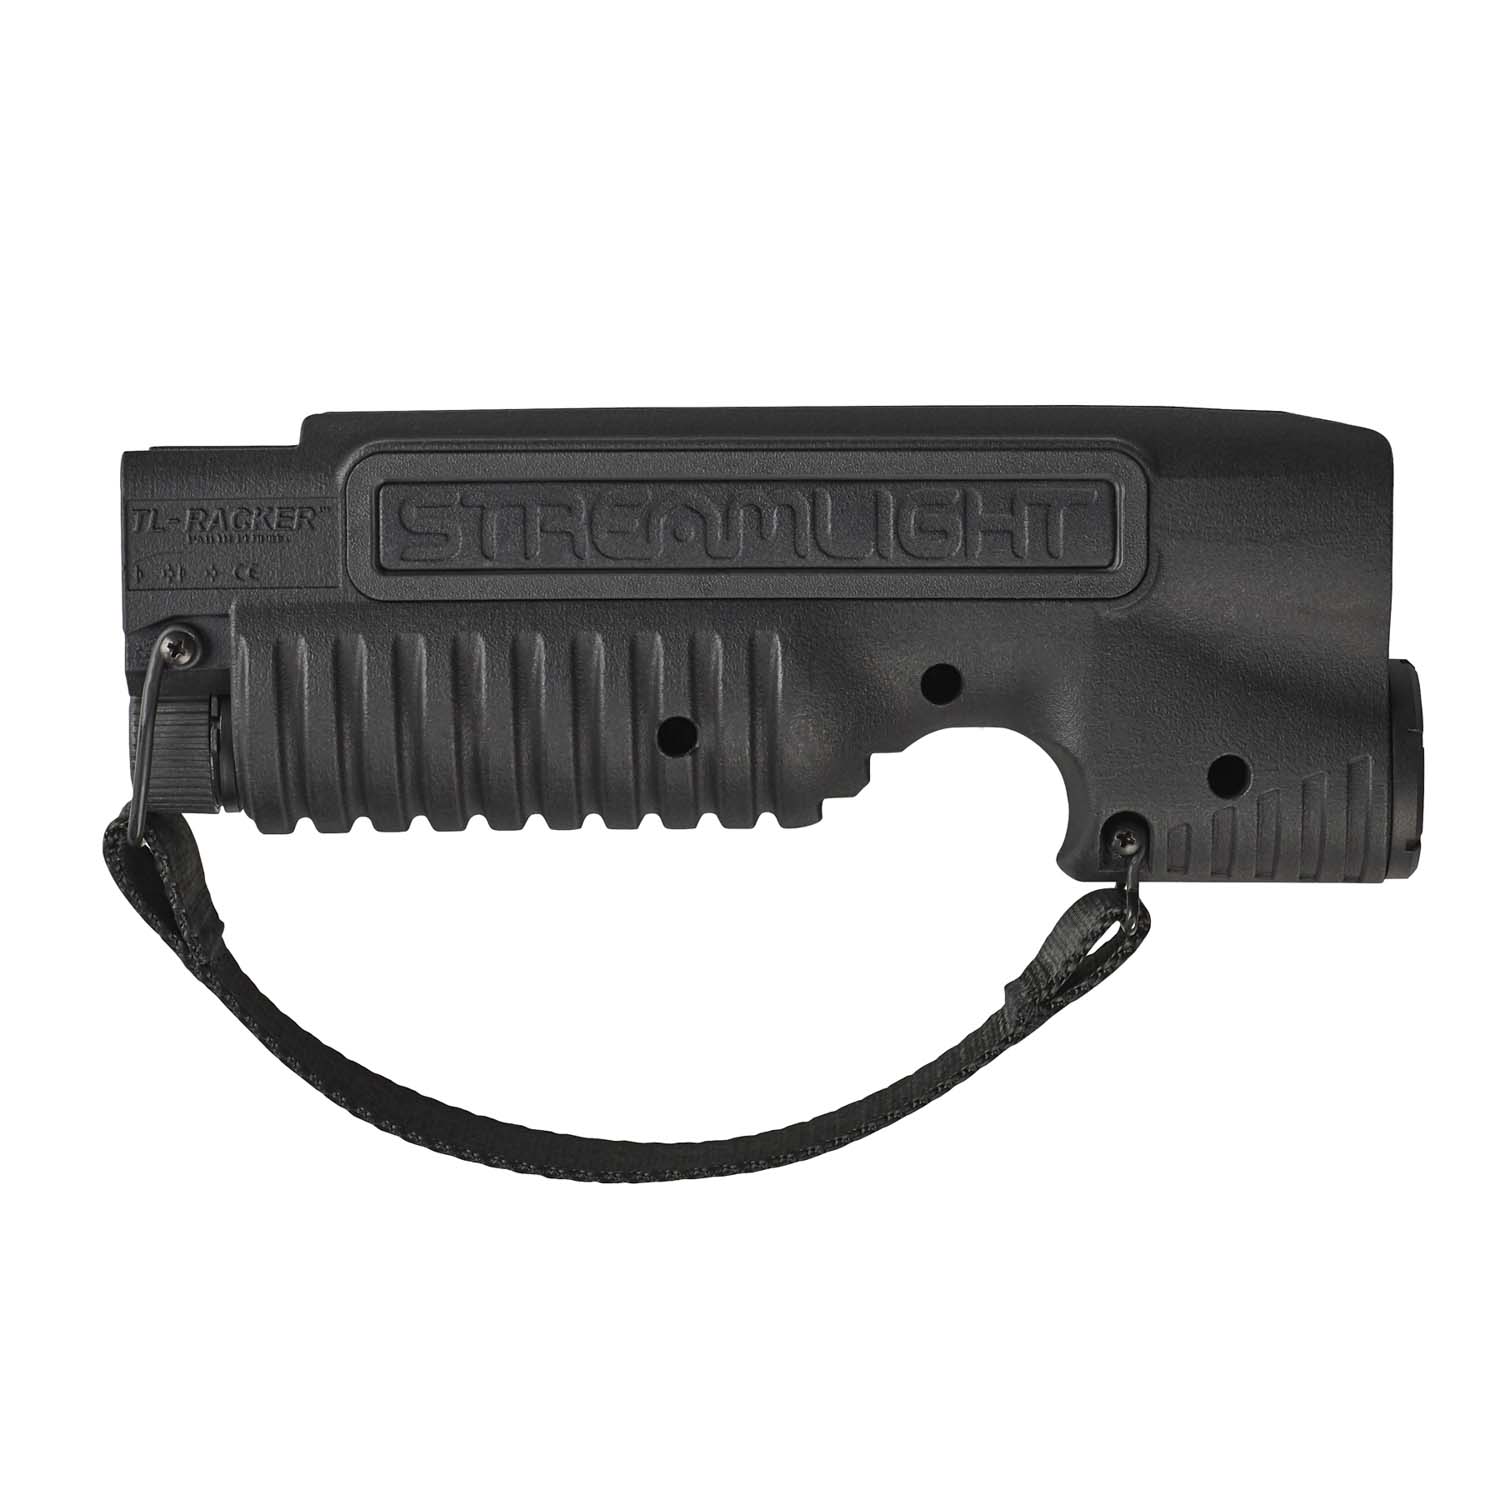 Streamlight TL-Racker Shotgun Forend Light - Mossberg Shockw